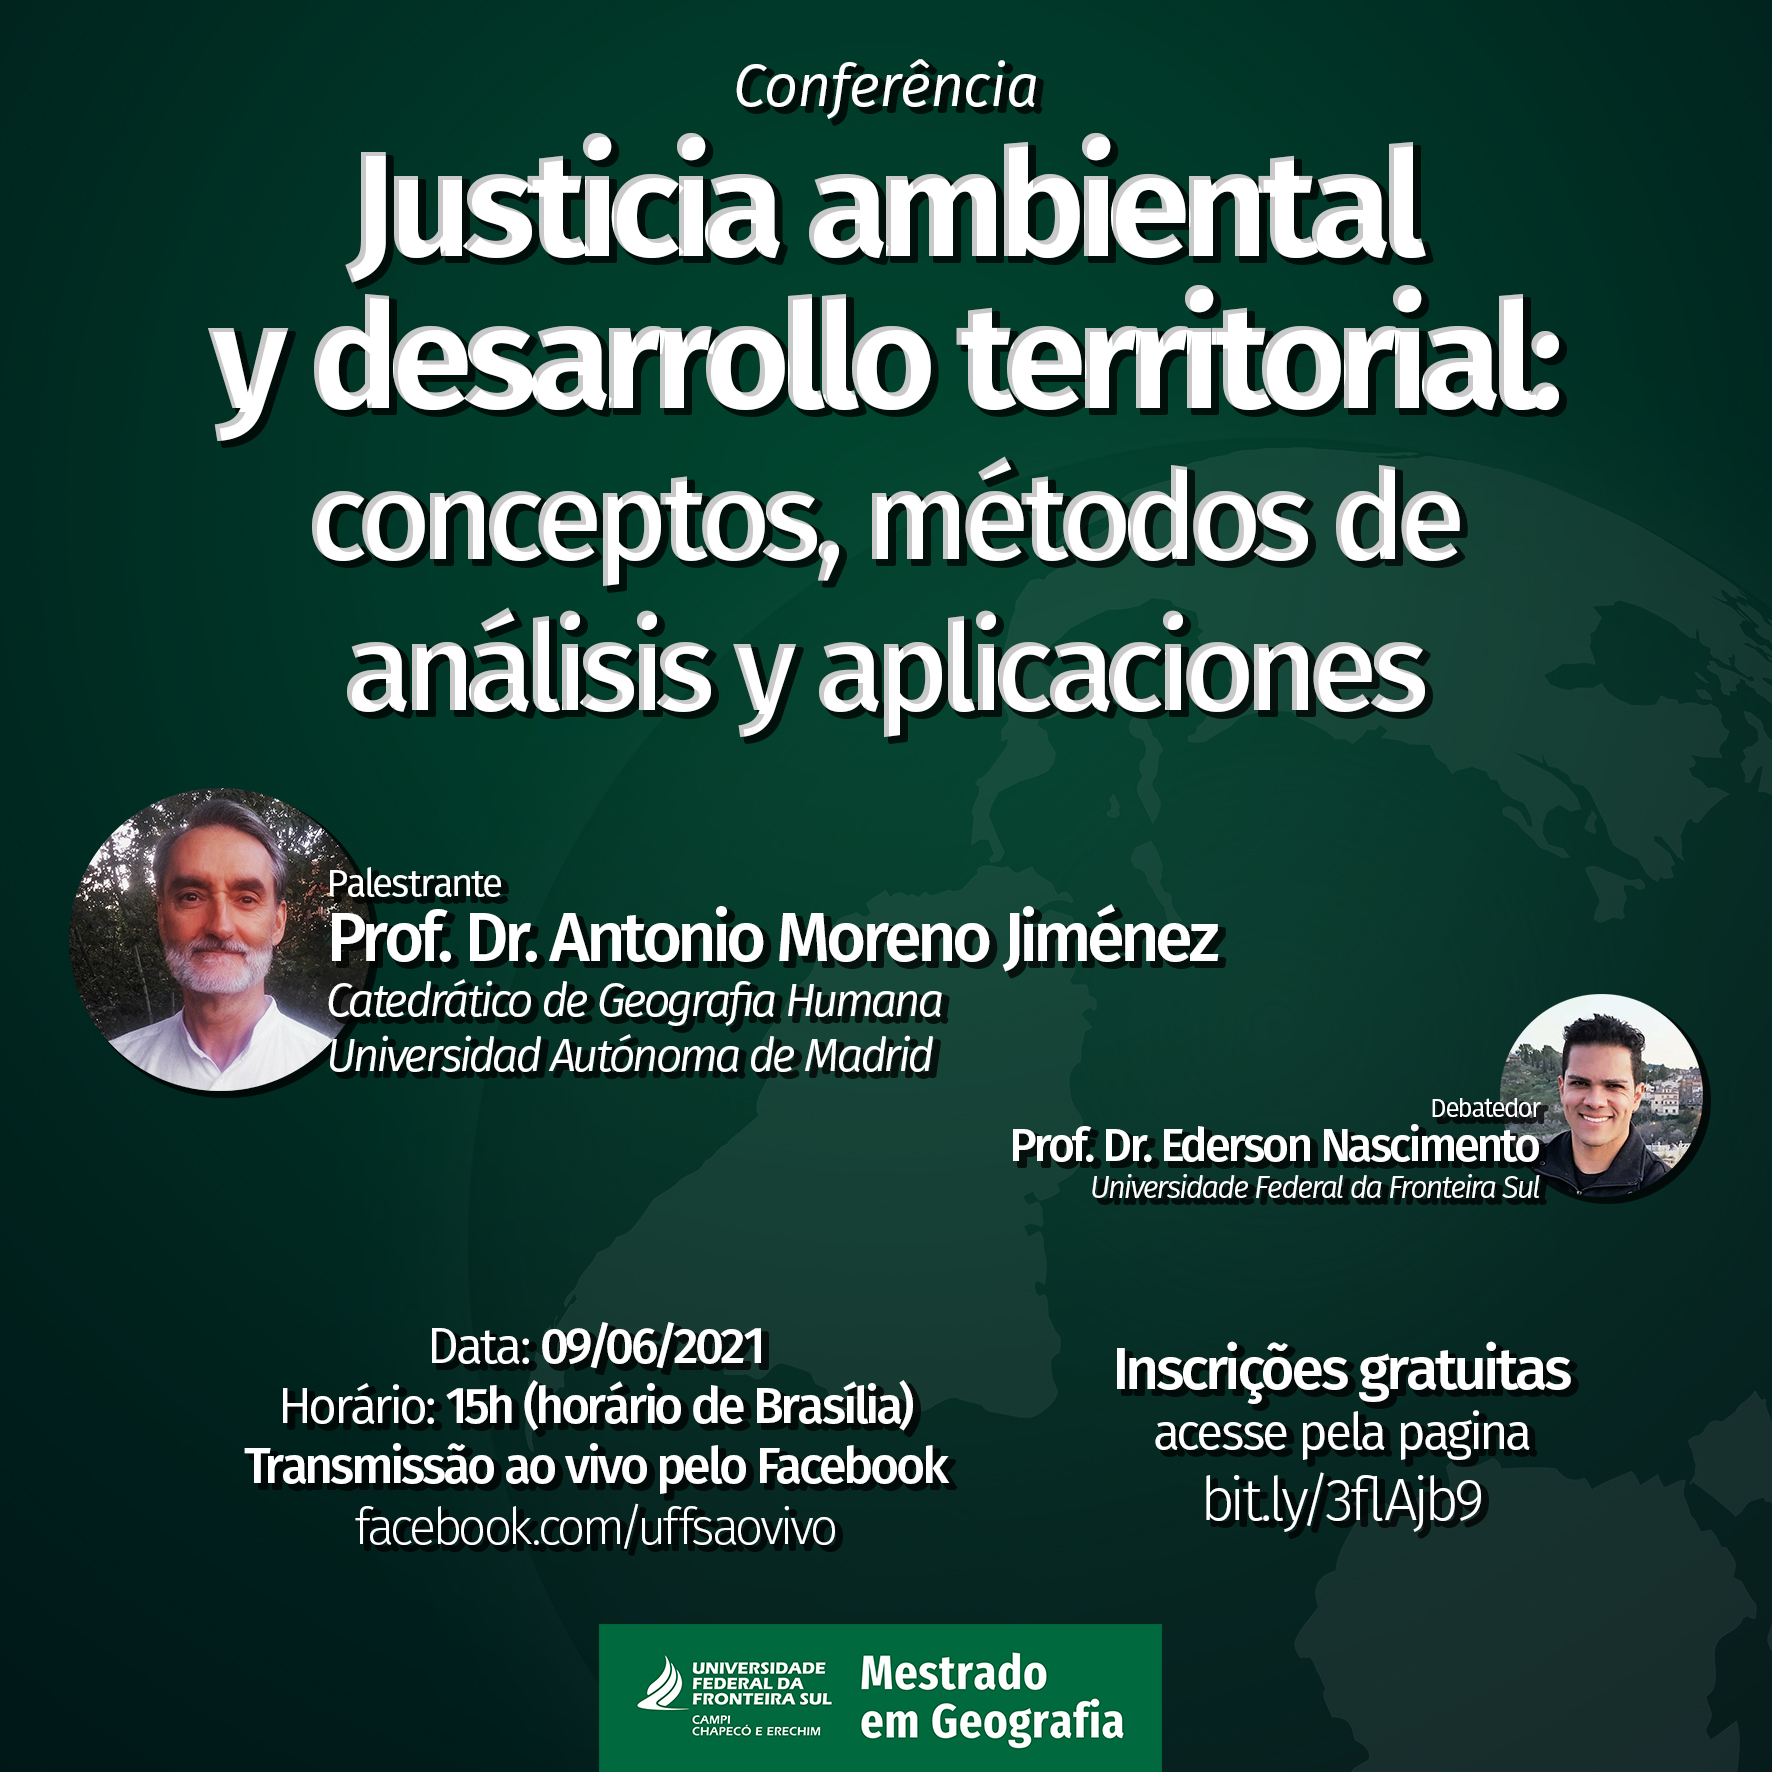 Conferência: "Justicia ambiental y desarrollo territorial: conceptos, métodos de análisis y aplicaciones"